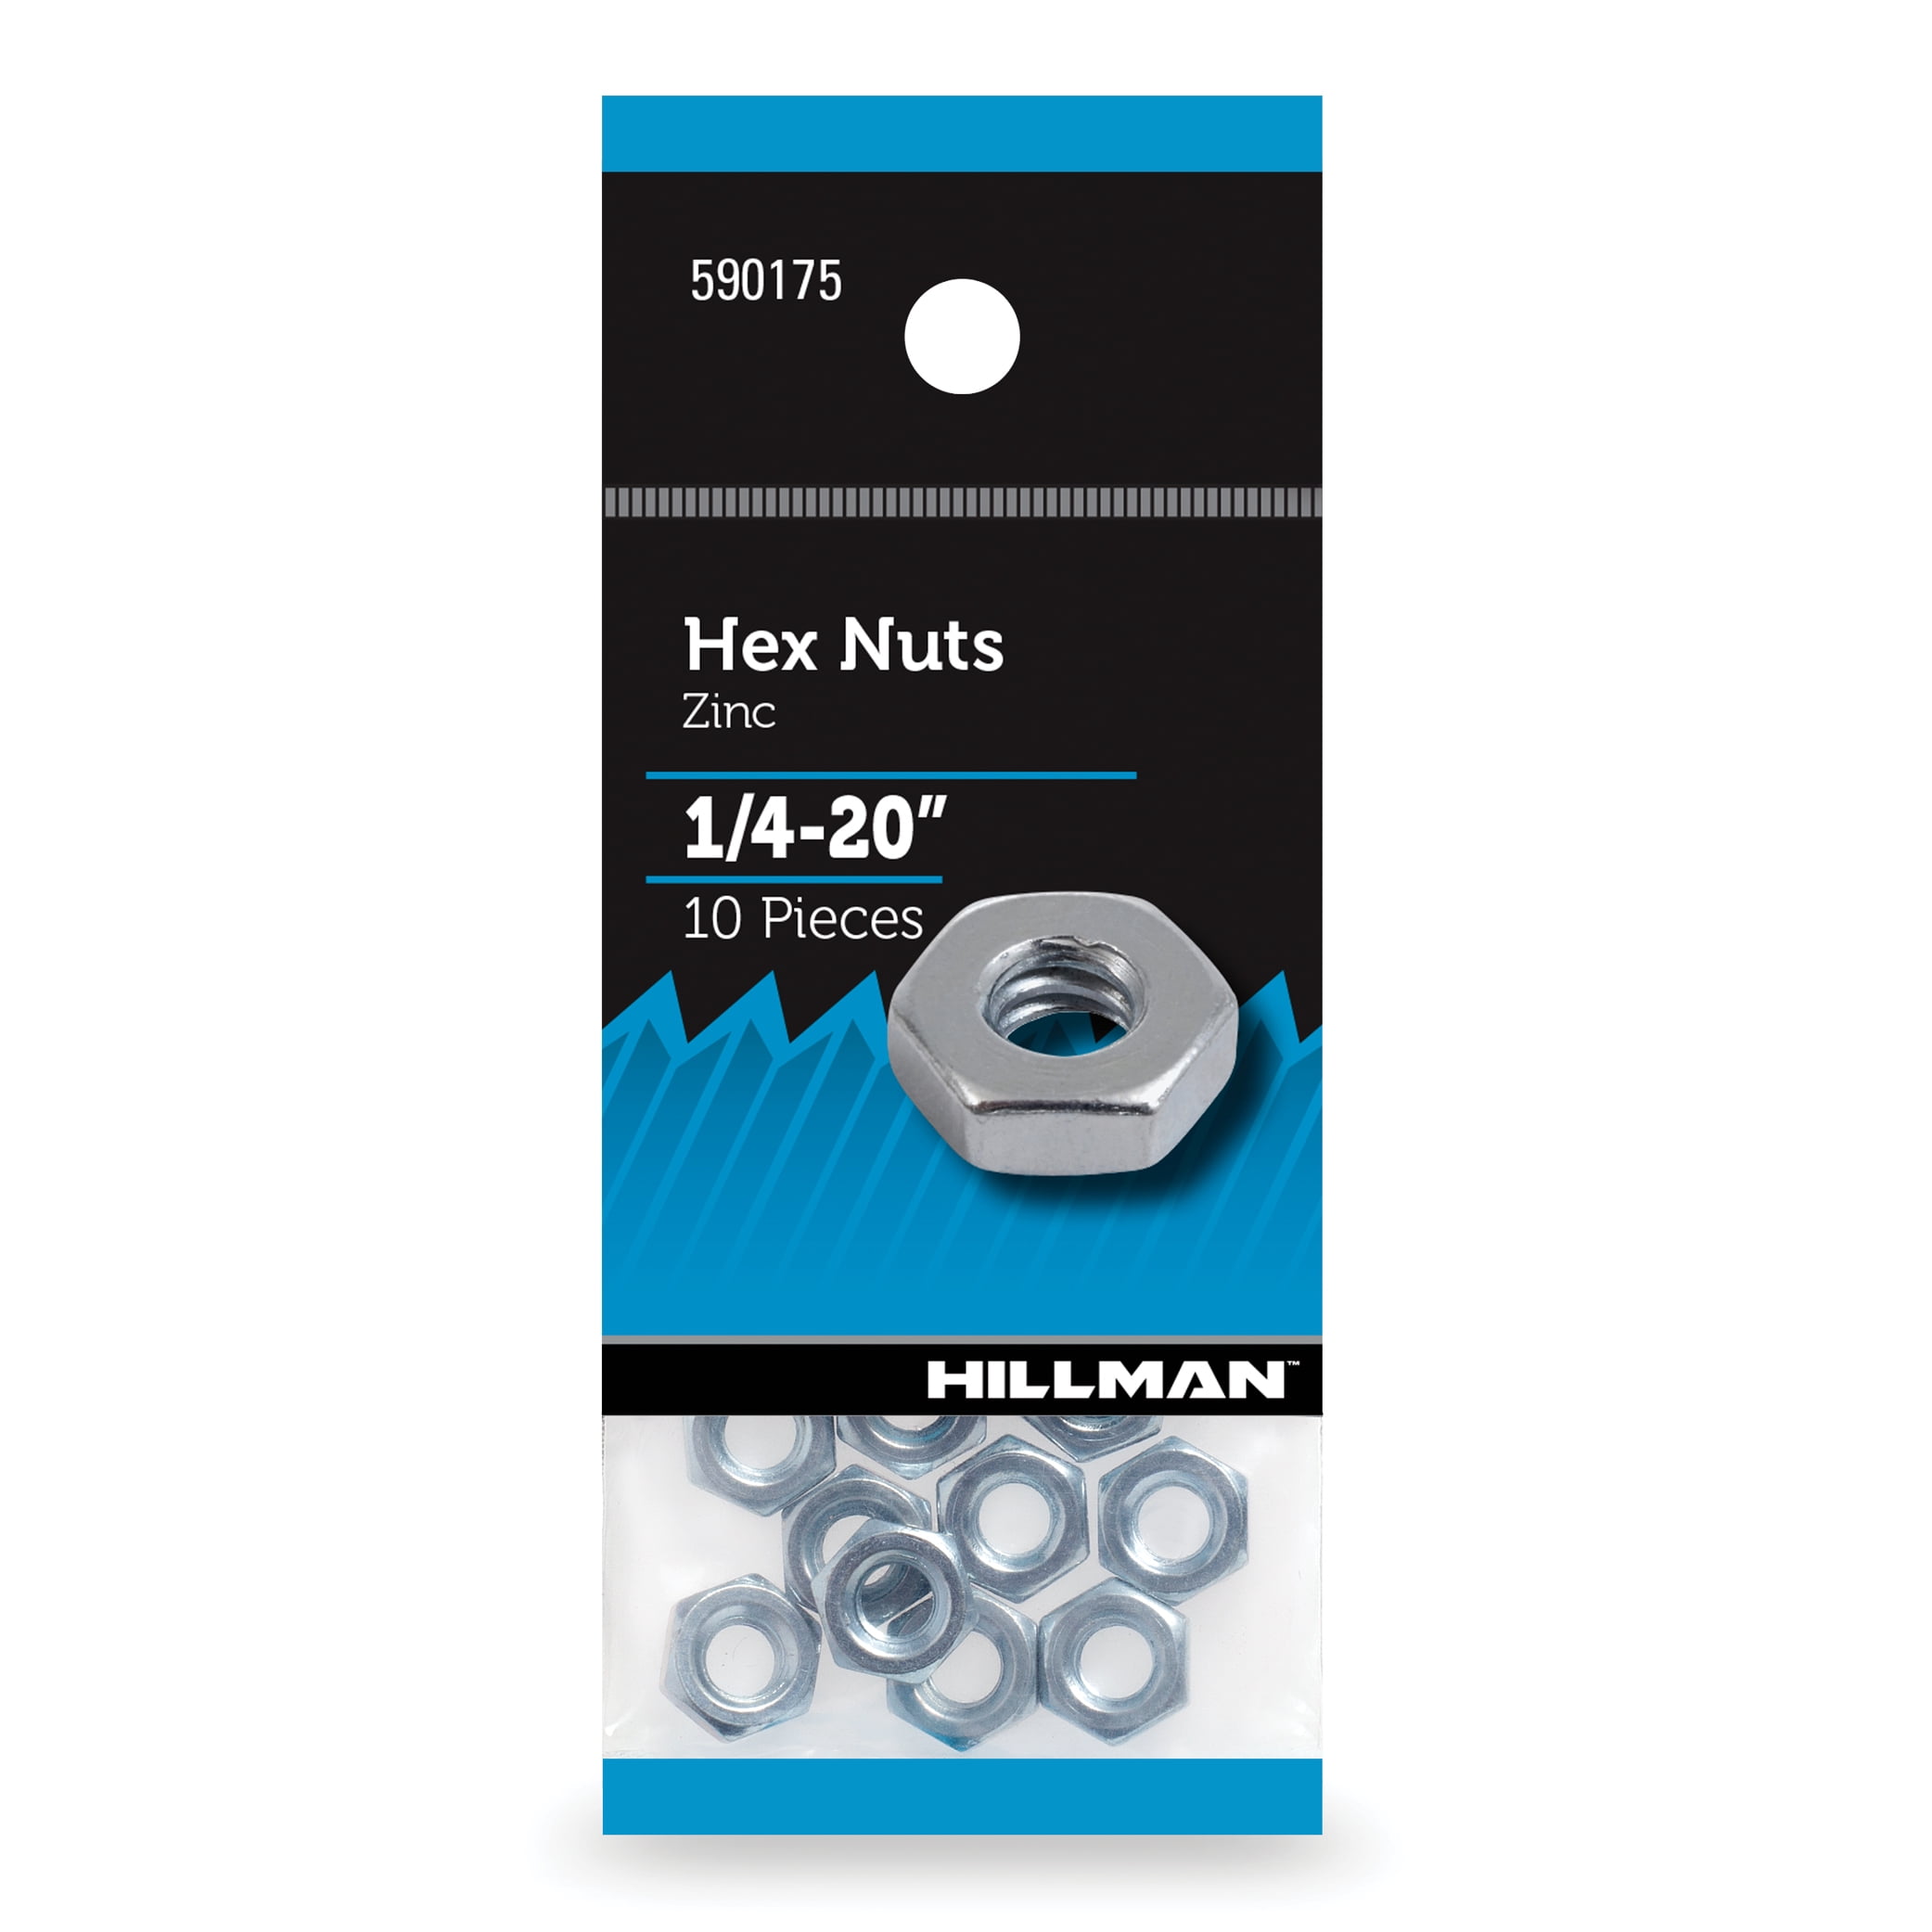 1/4-20 Solid Brass Hex Locknut Nylon Insert Elastic Stop Lock Nuts Qty 500 